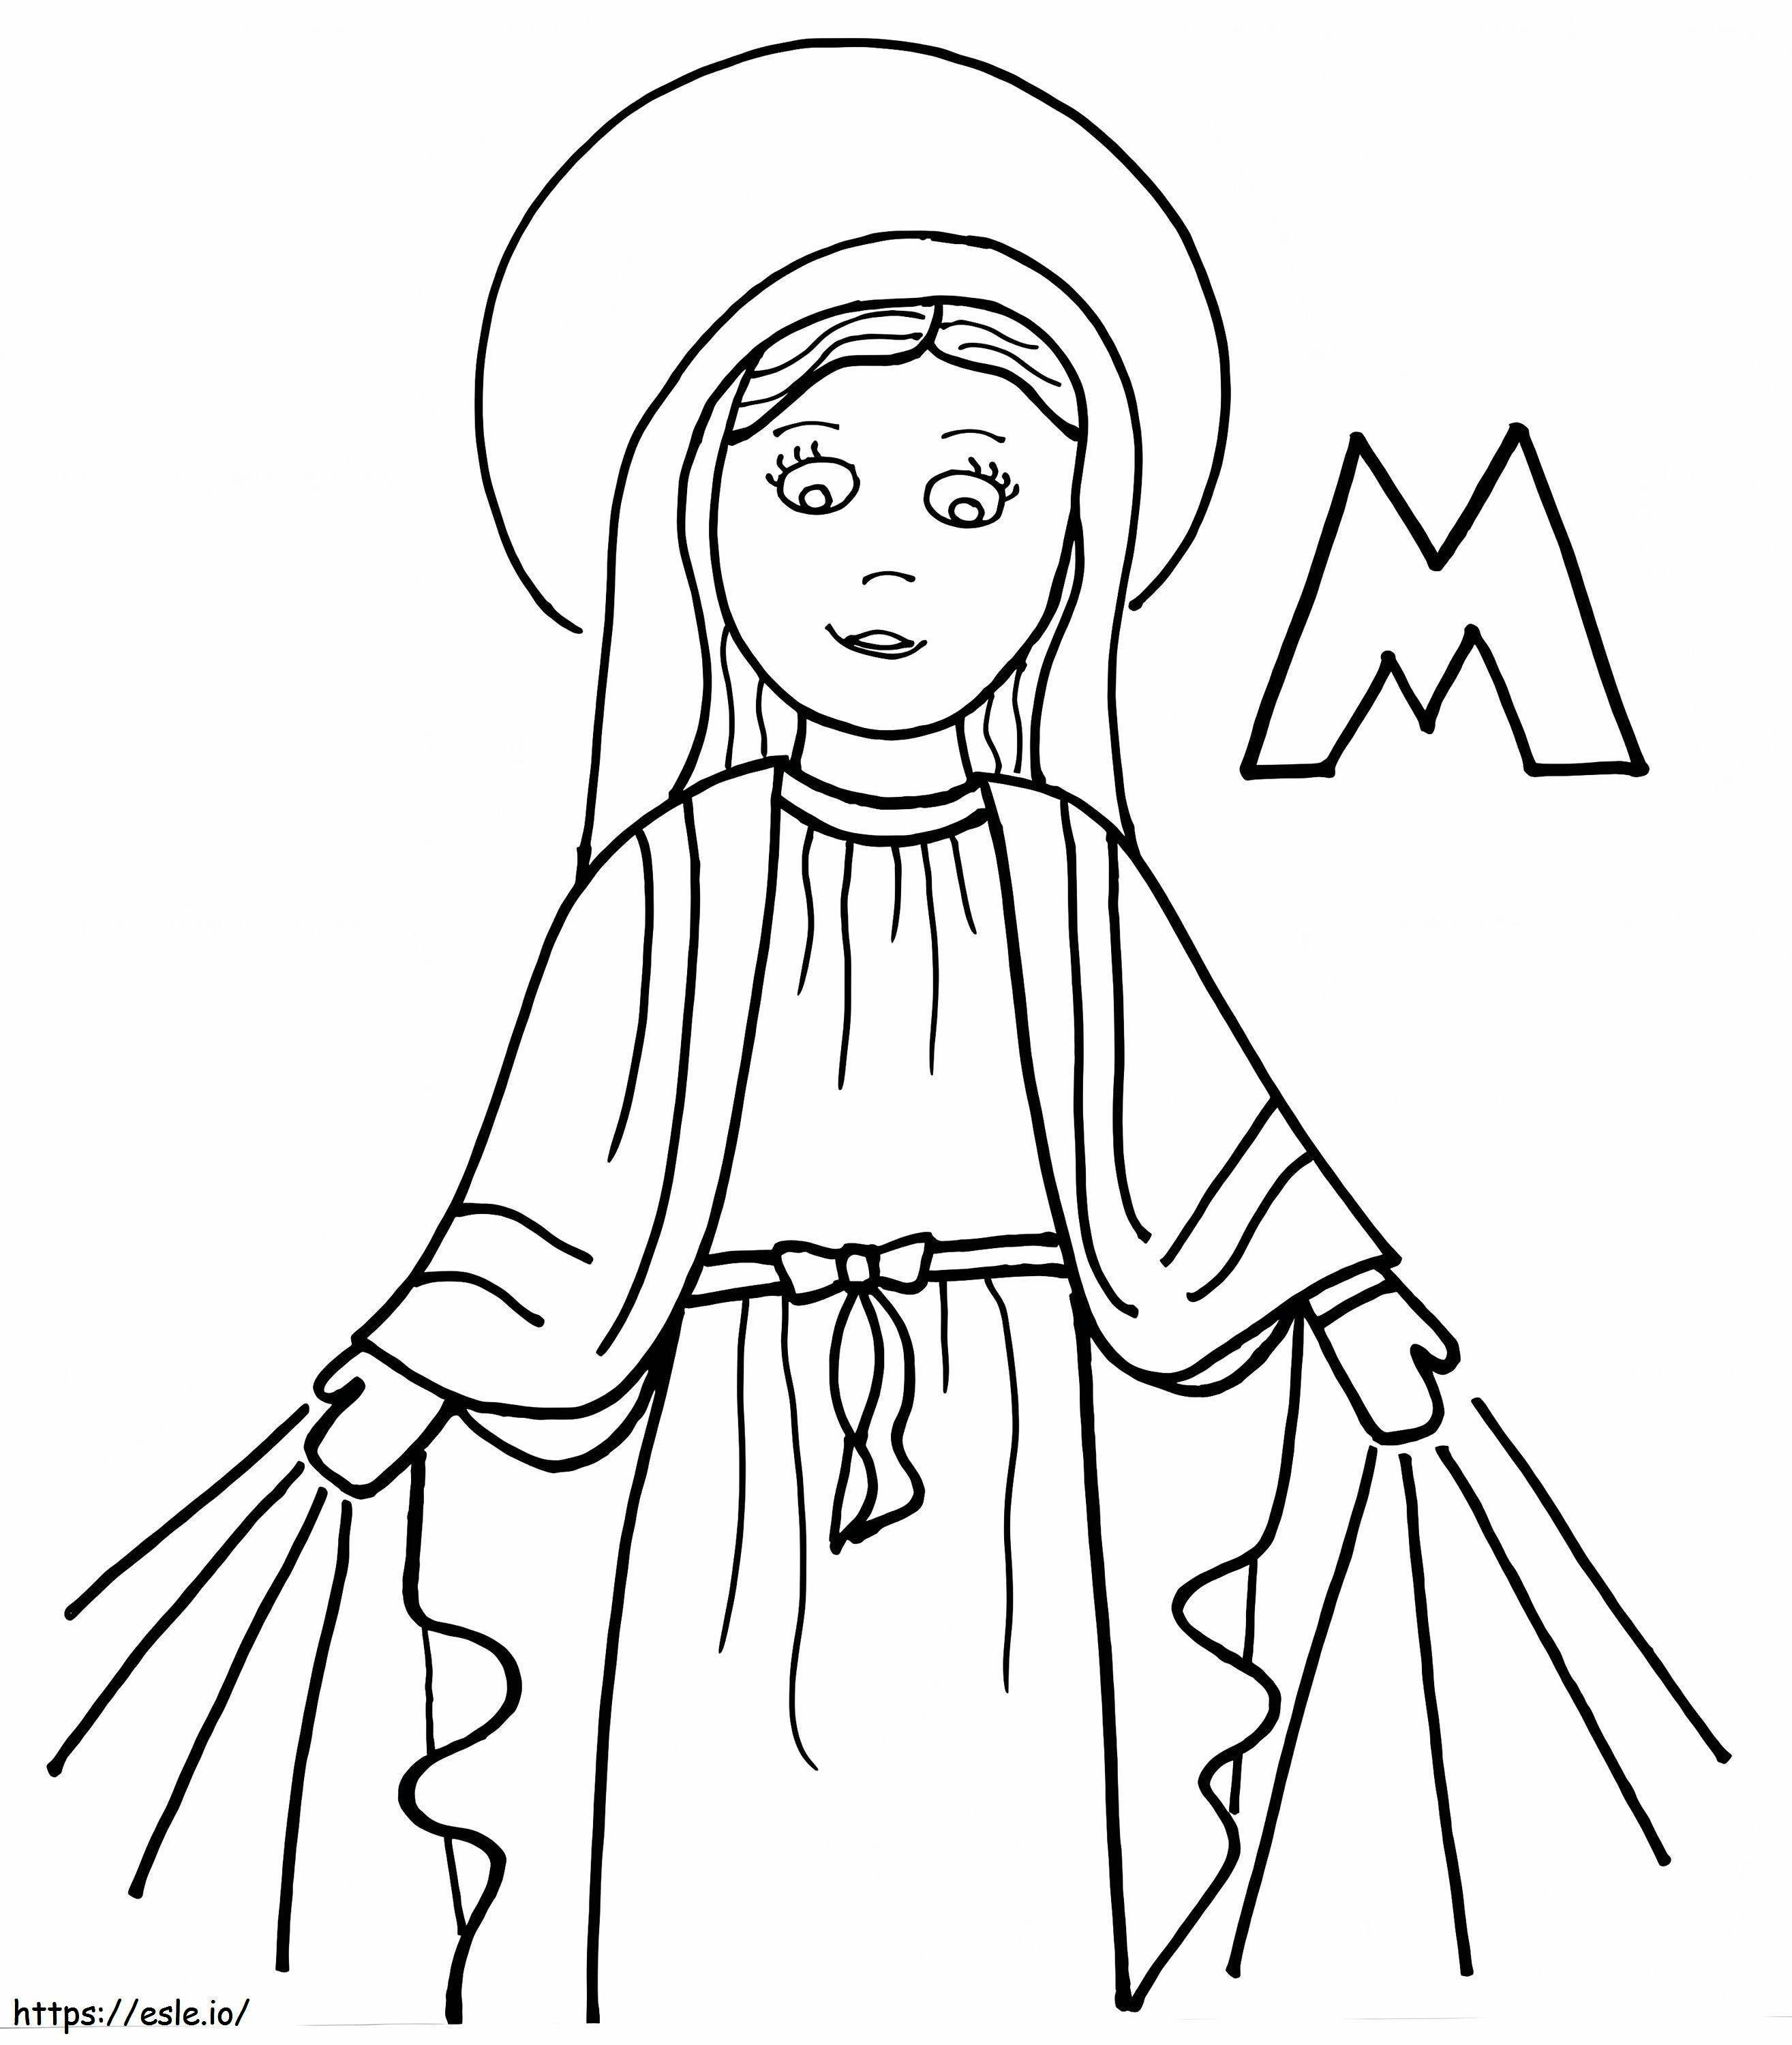 İsa'nın Annesi Meryem Ücretsiz Yazdırılabilir boyama